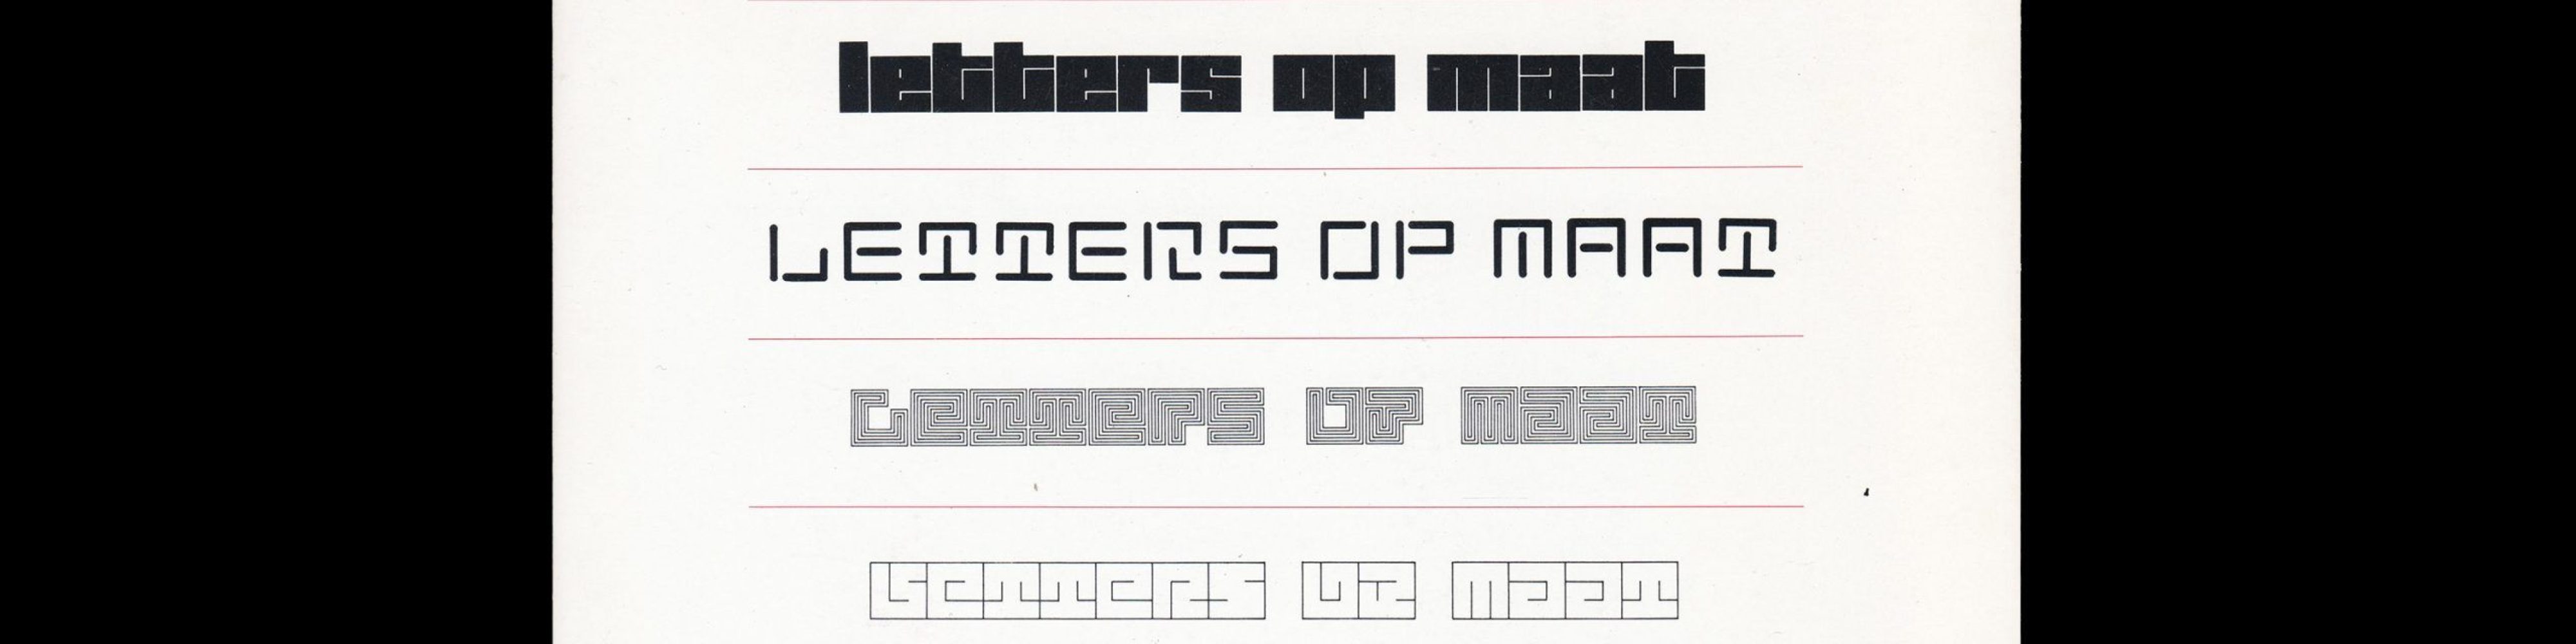 Letters op maat. Lecturis 18, Jurriaan Schrofer, 1987